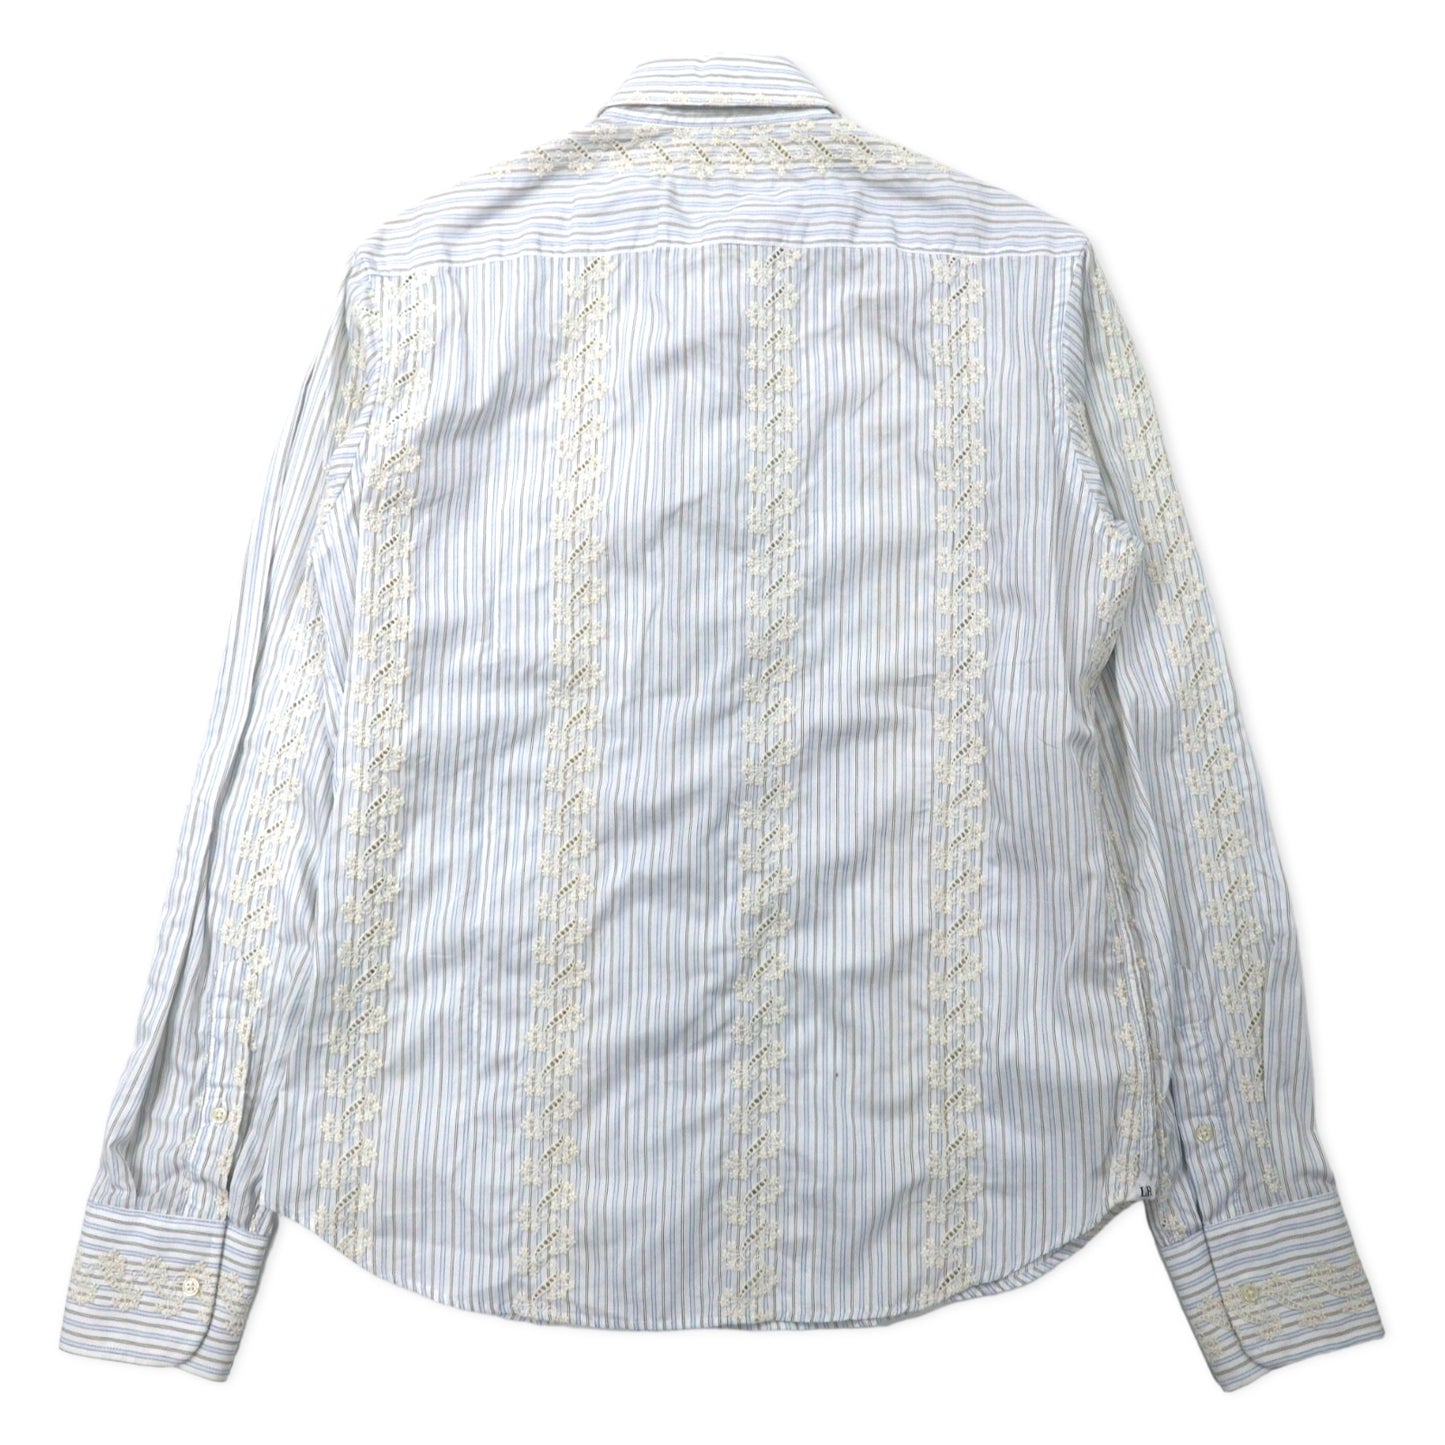 RONSON イタリア製 花柄刺繍 ドレスシャツ 41 ホワイト ストライプ コットン 未使用品